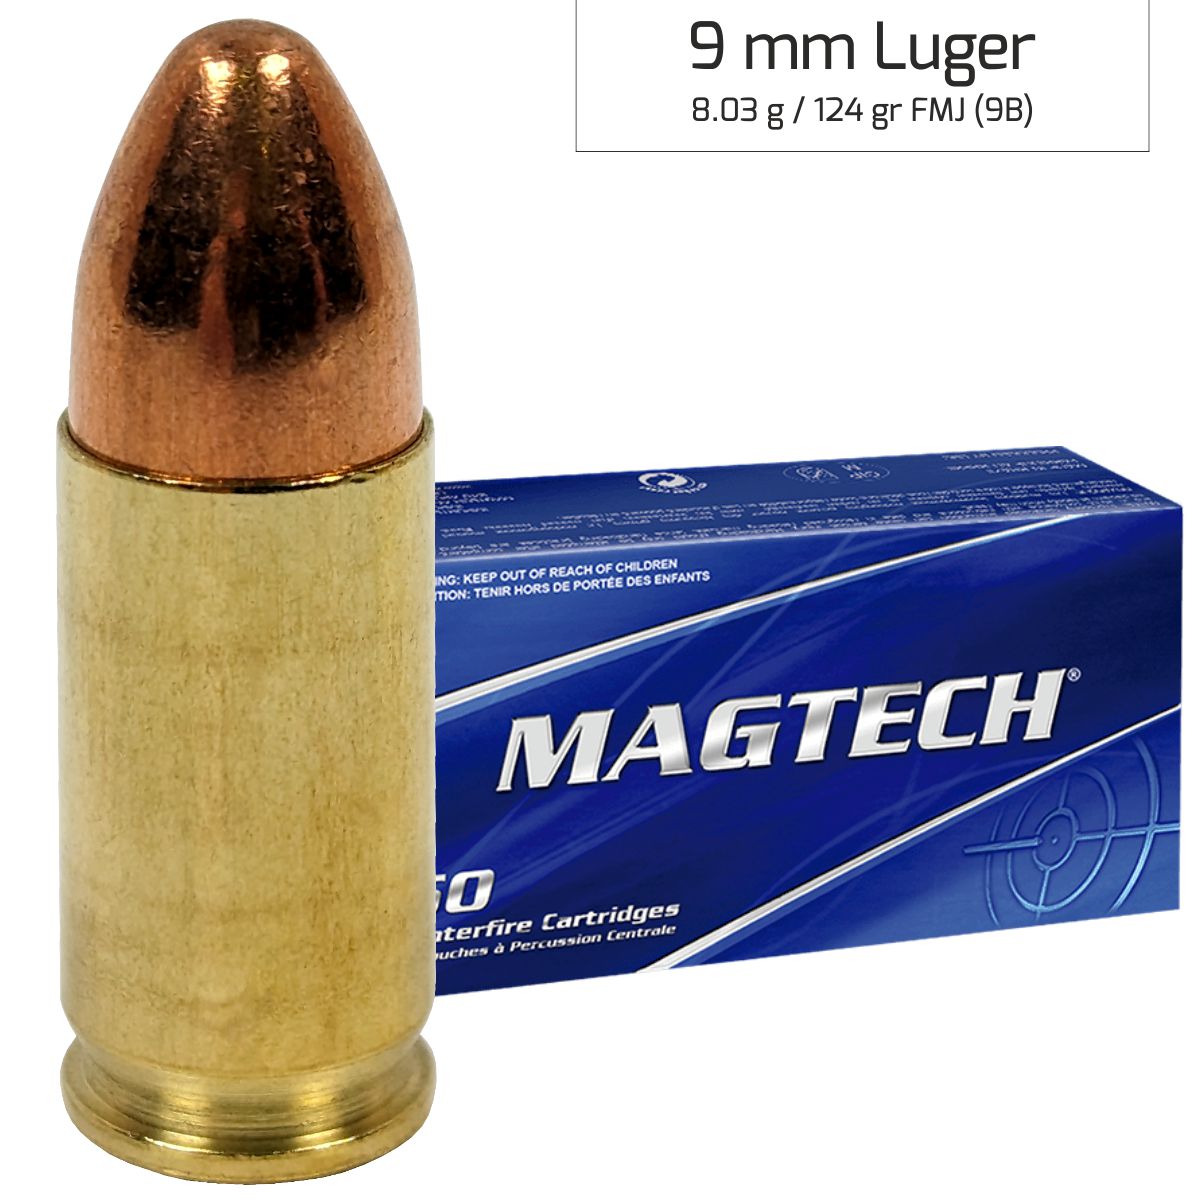 Náboj Magtech 9 mm Luger FMJ (9A) 7,45g 115gr